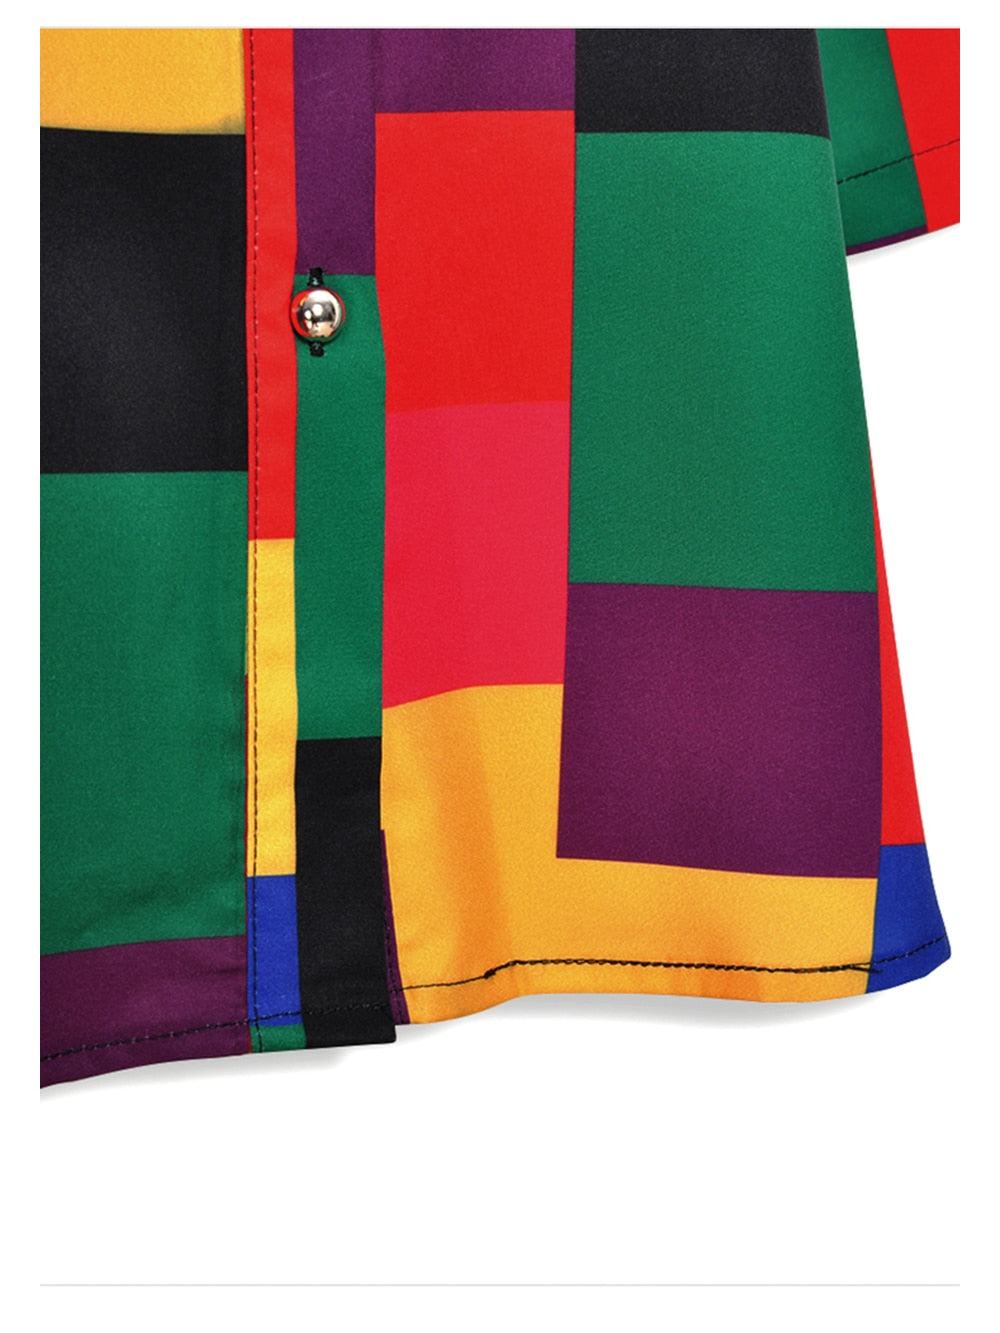 Geometric patterns Colorful Shirt